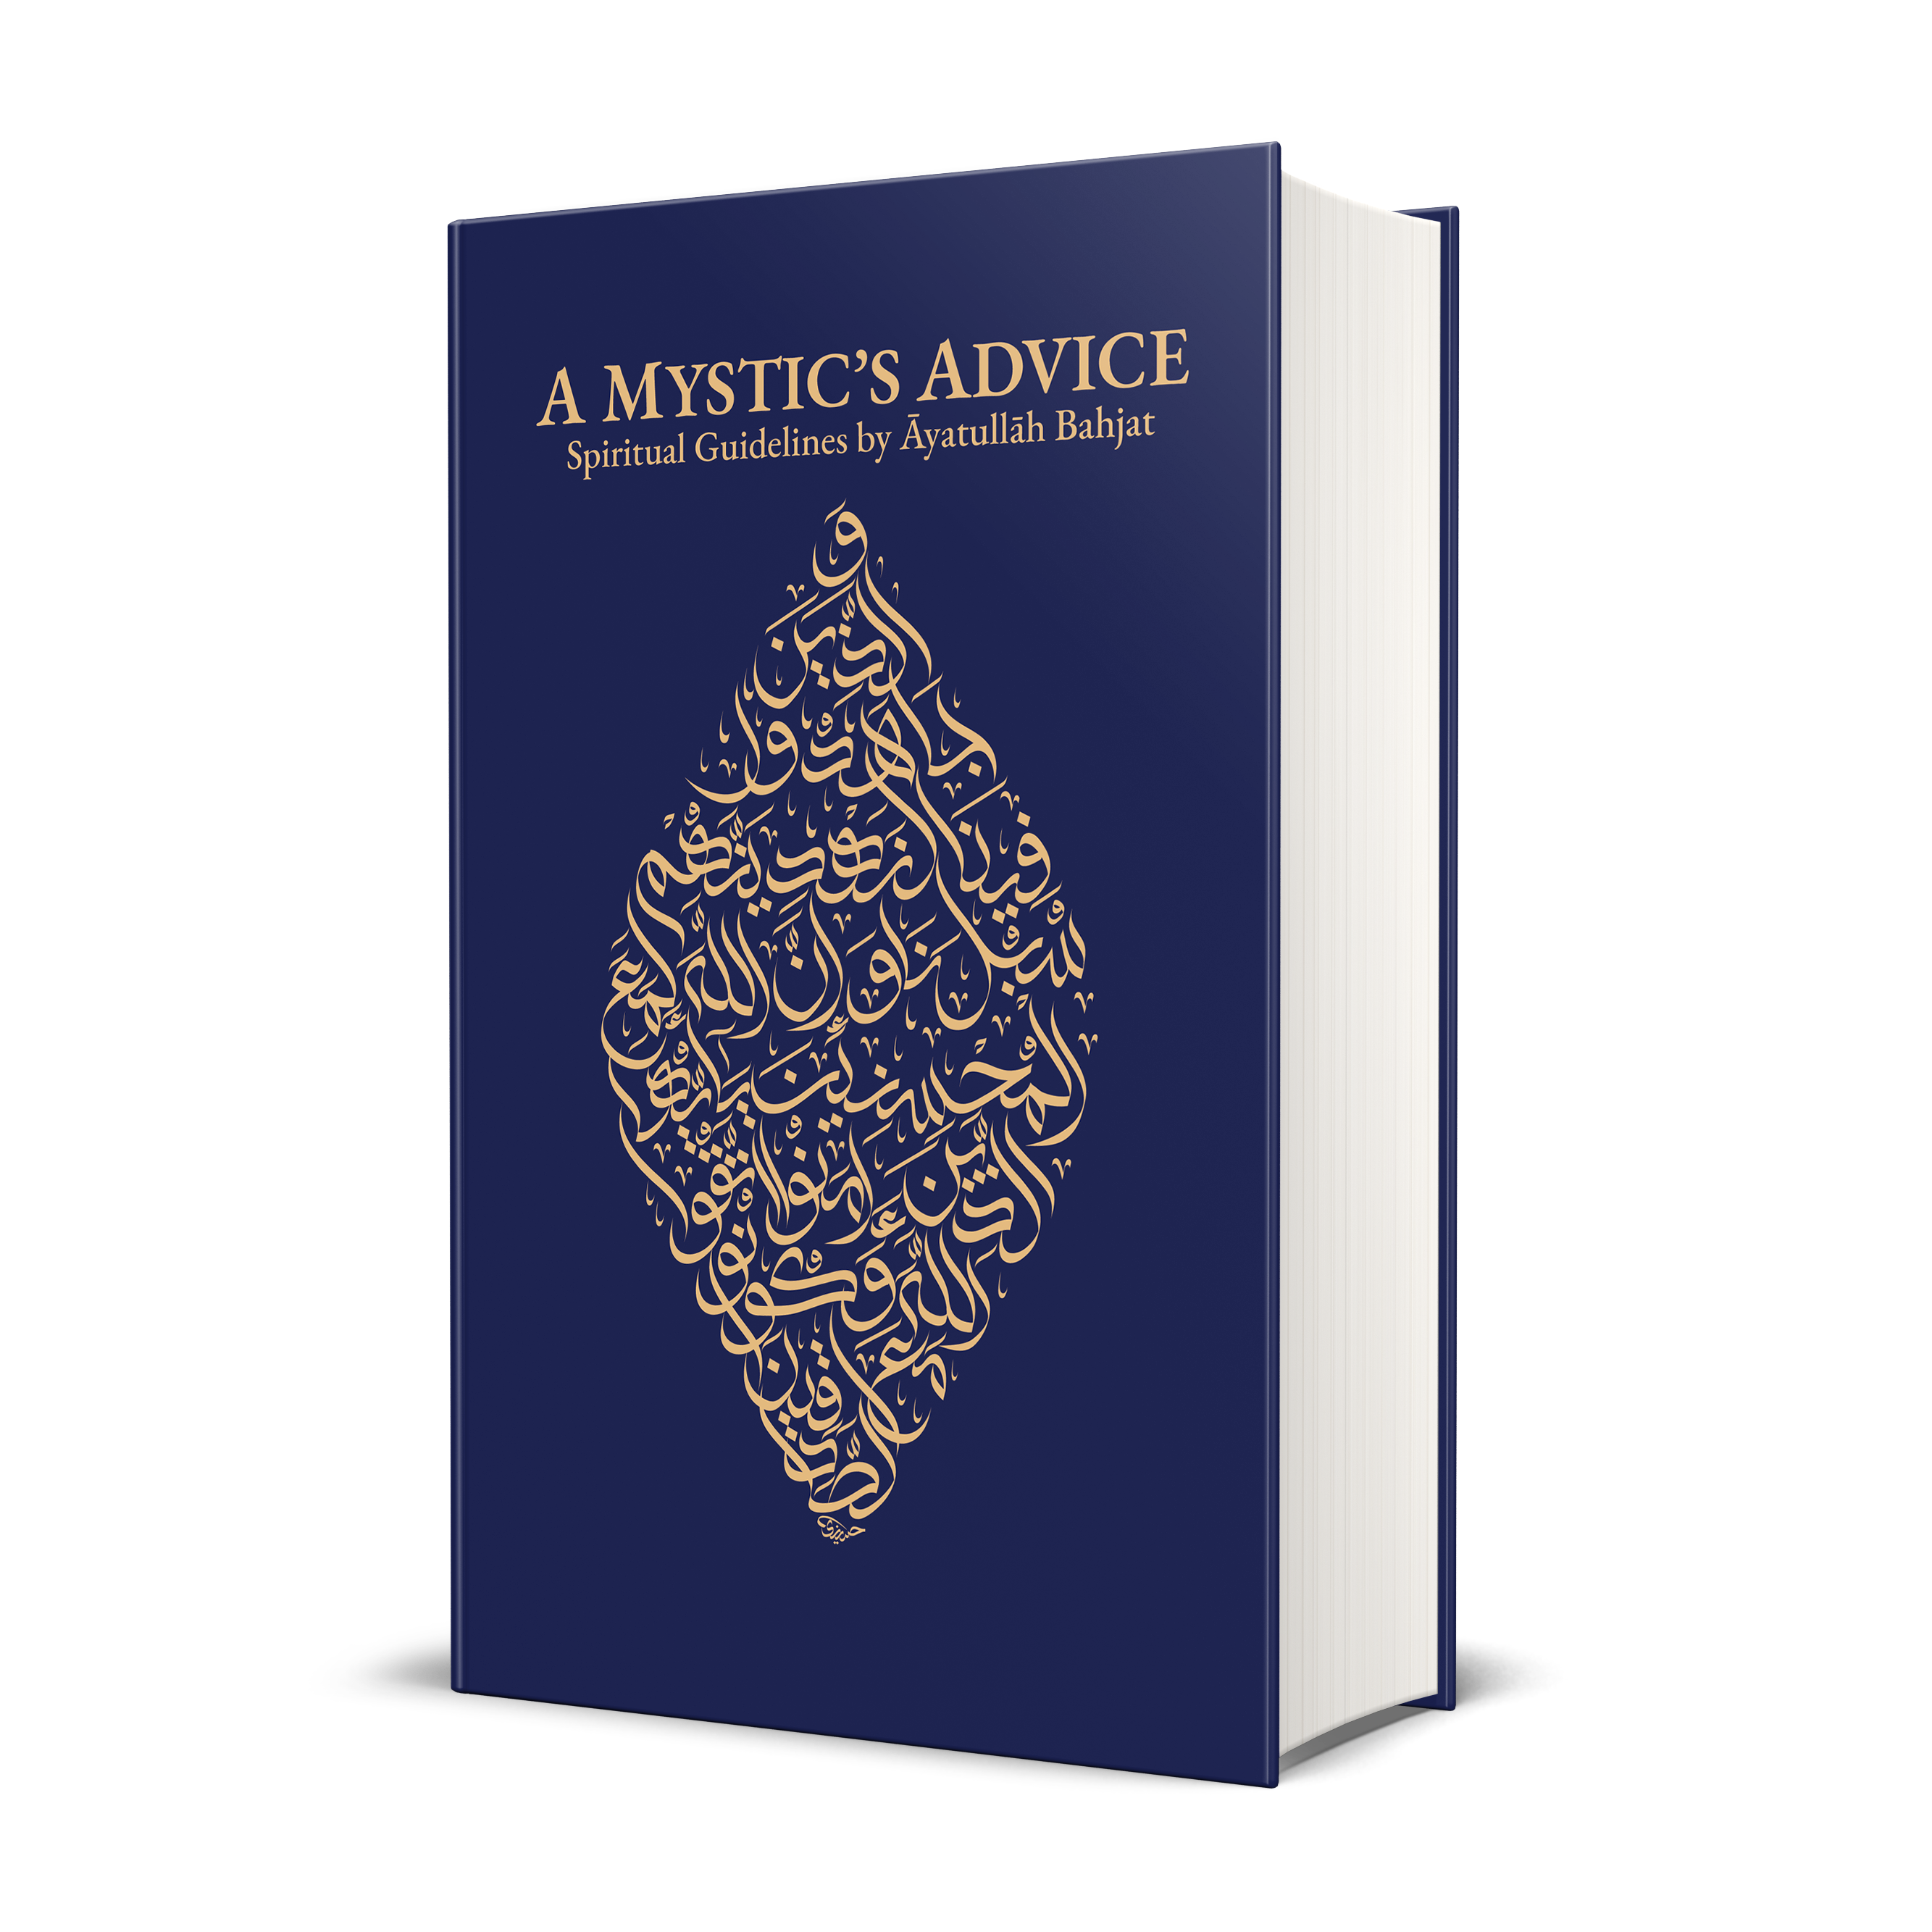 A Mystic’s Advice: Spiritual Guidelines by Āyatullāh Bahjat